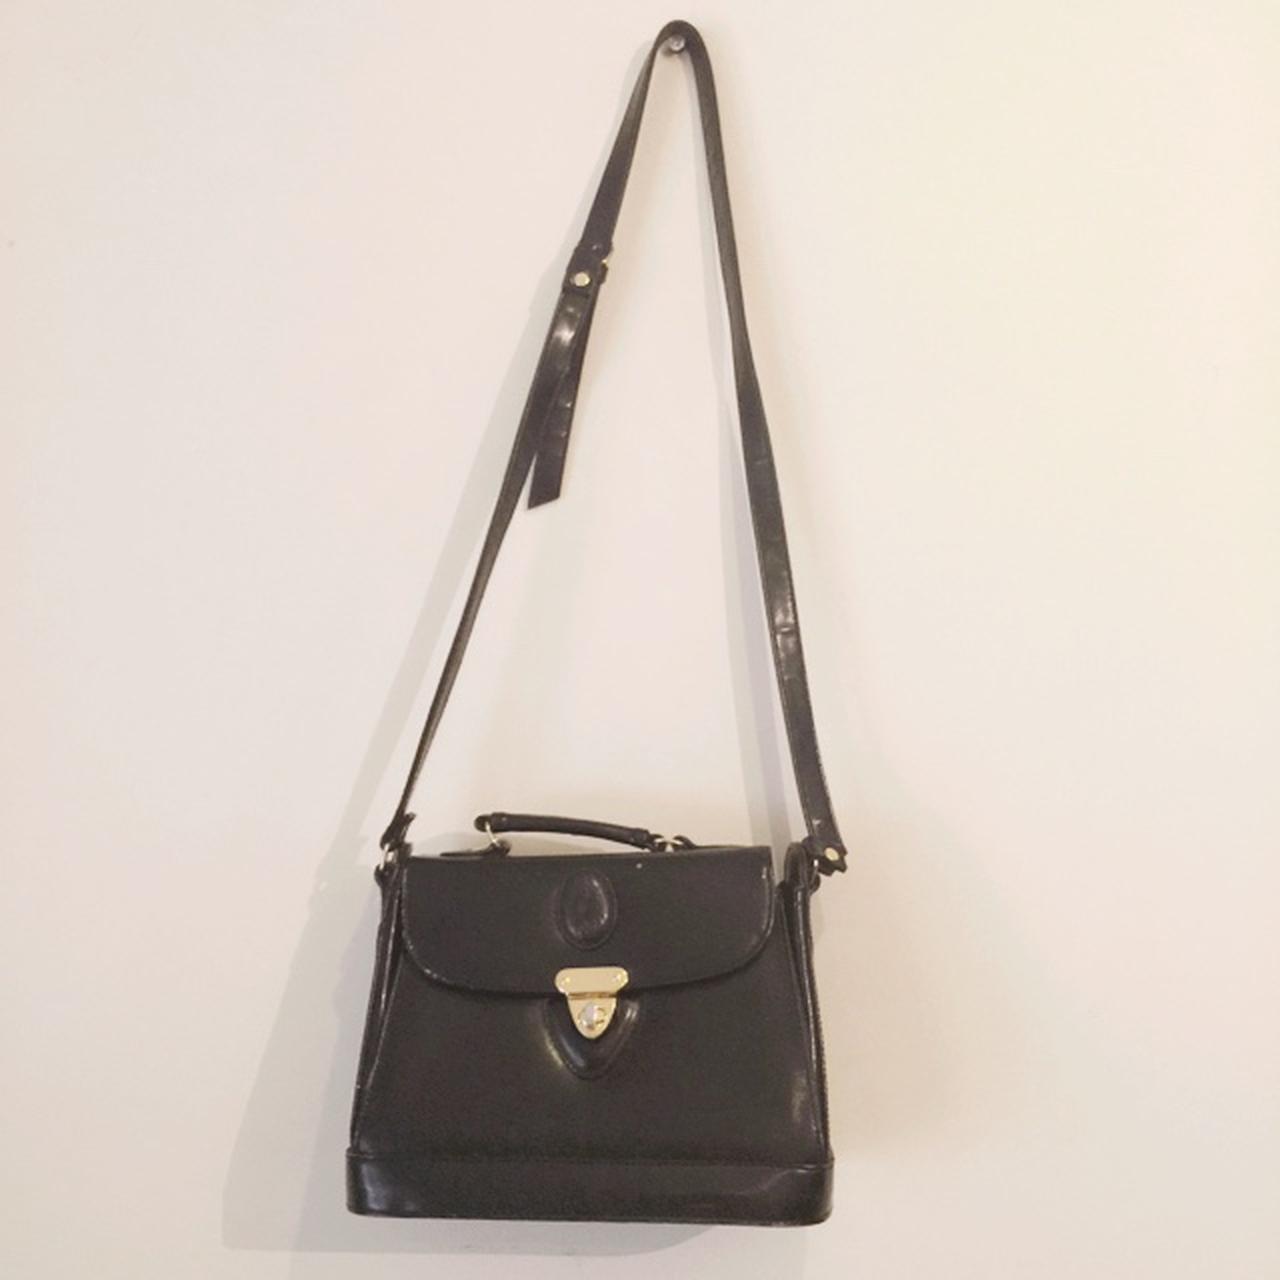 Stunning black vintage leather satchel bag from... - Depop